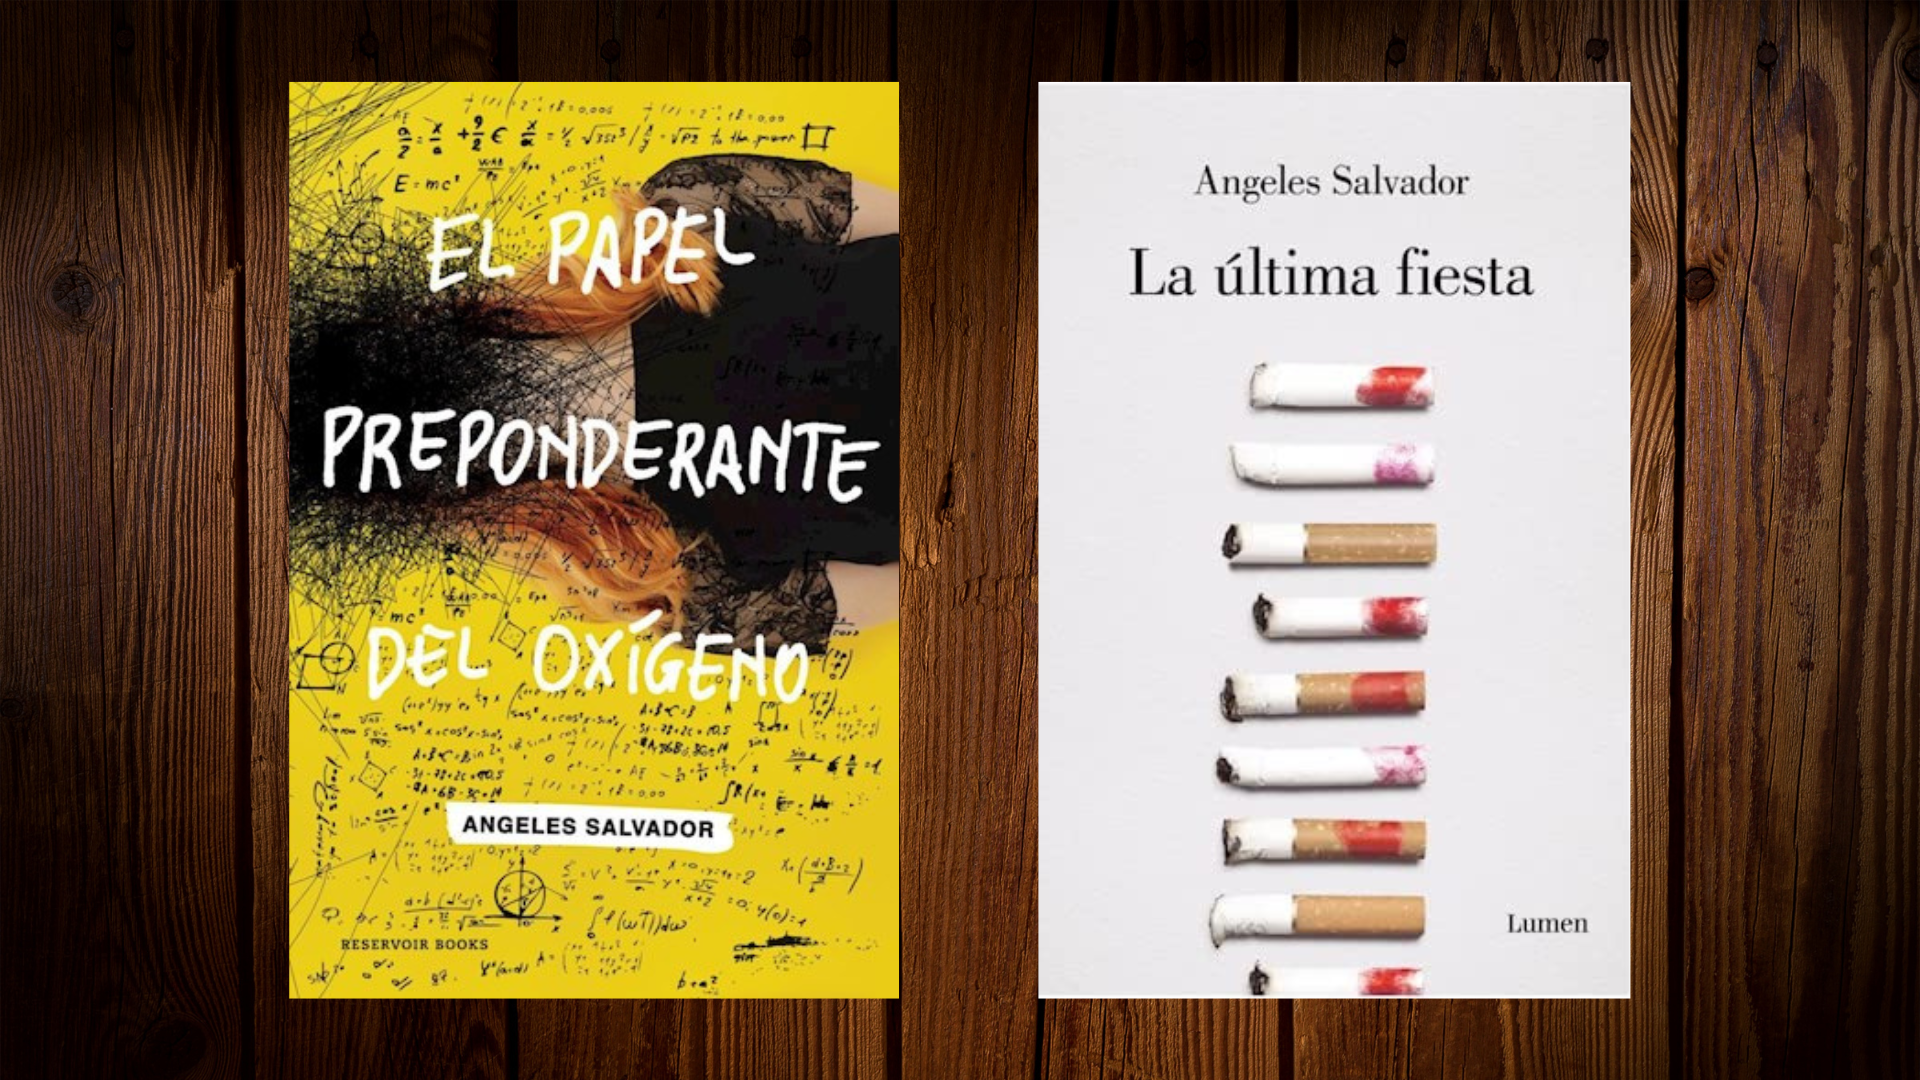 Los dos libros de Ángeles Salvador: "El papel preponderante del oxígeno" y "La última fiesta"